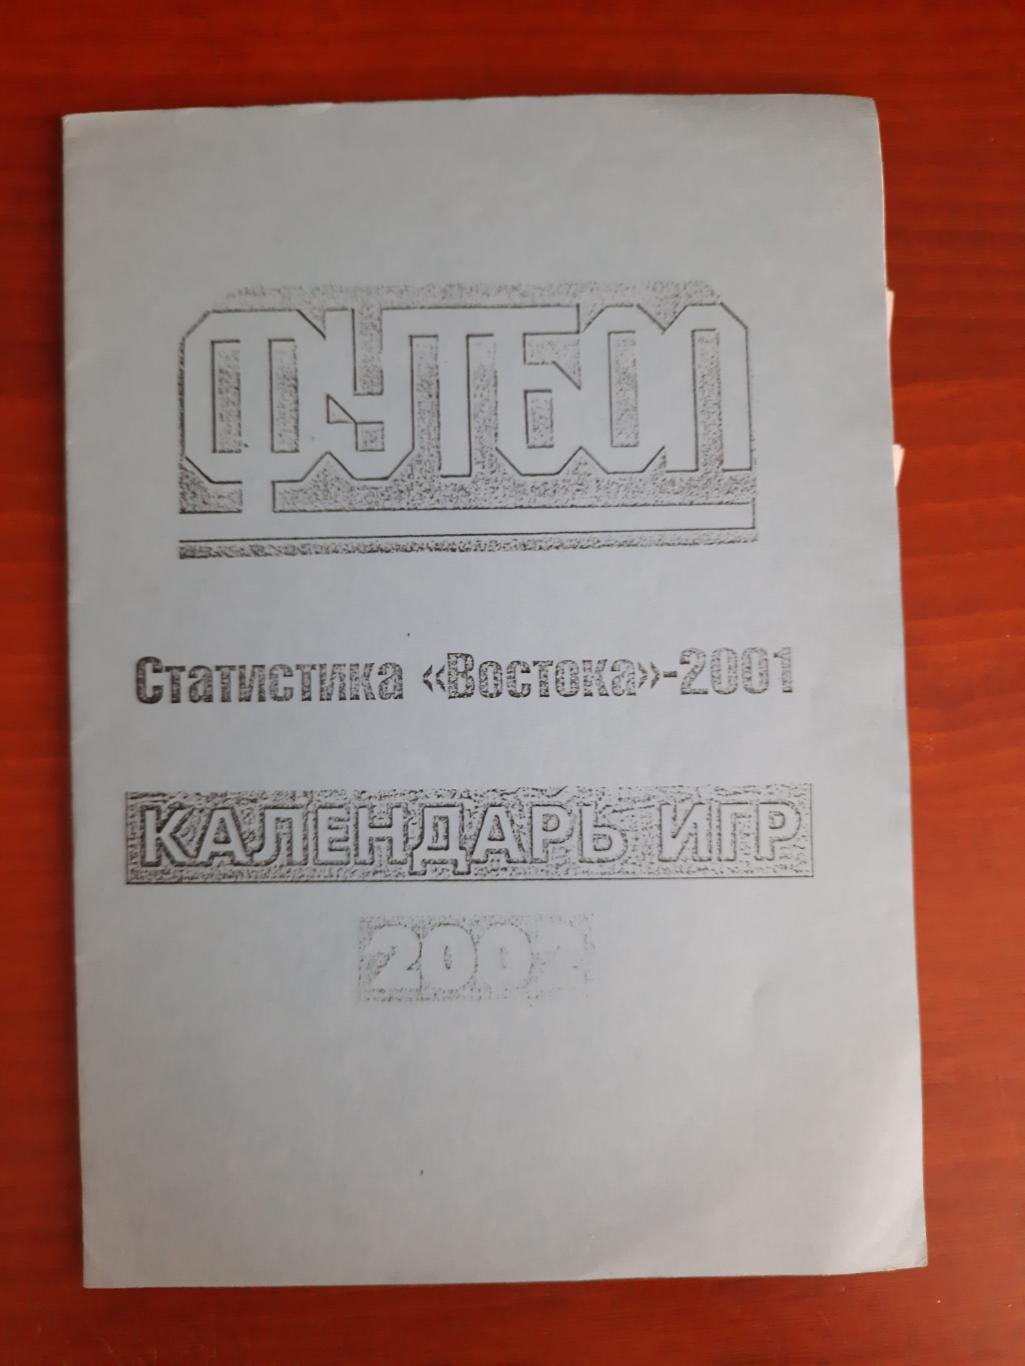 Статистика Востока - 2001. Календарь игр 2002 (Новосибирск, 2002)